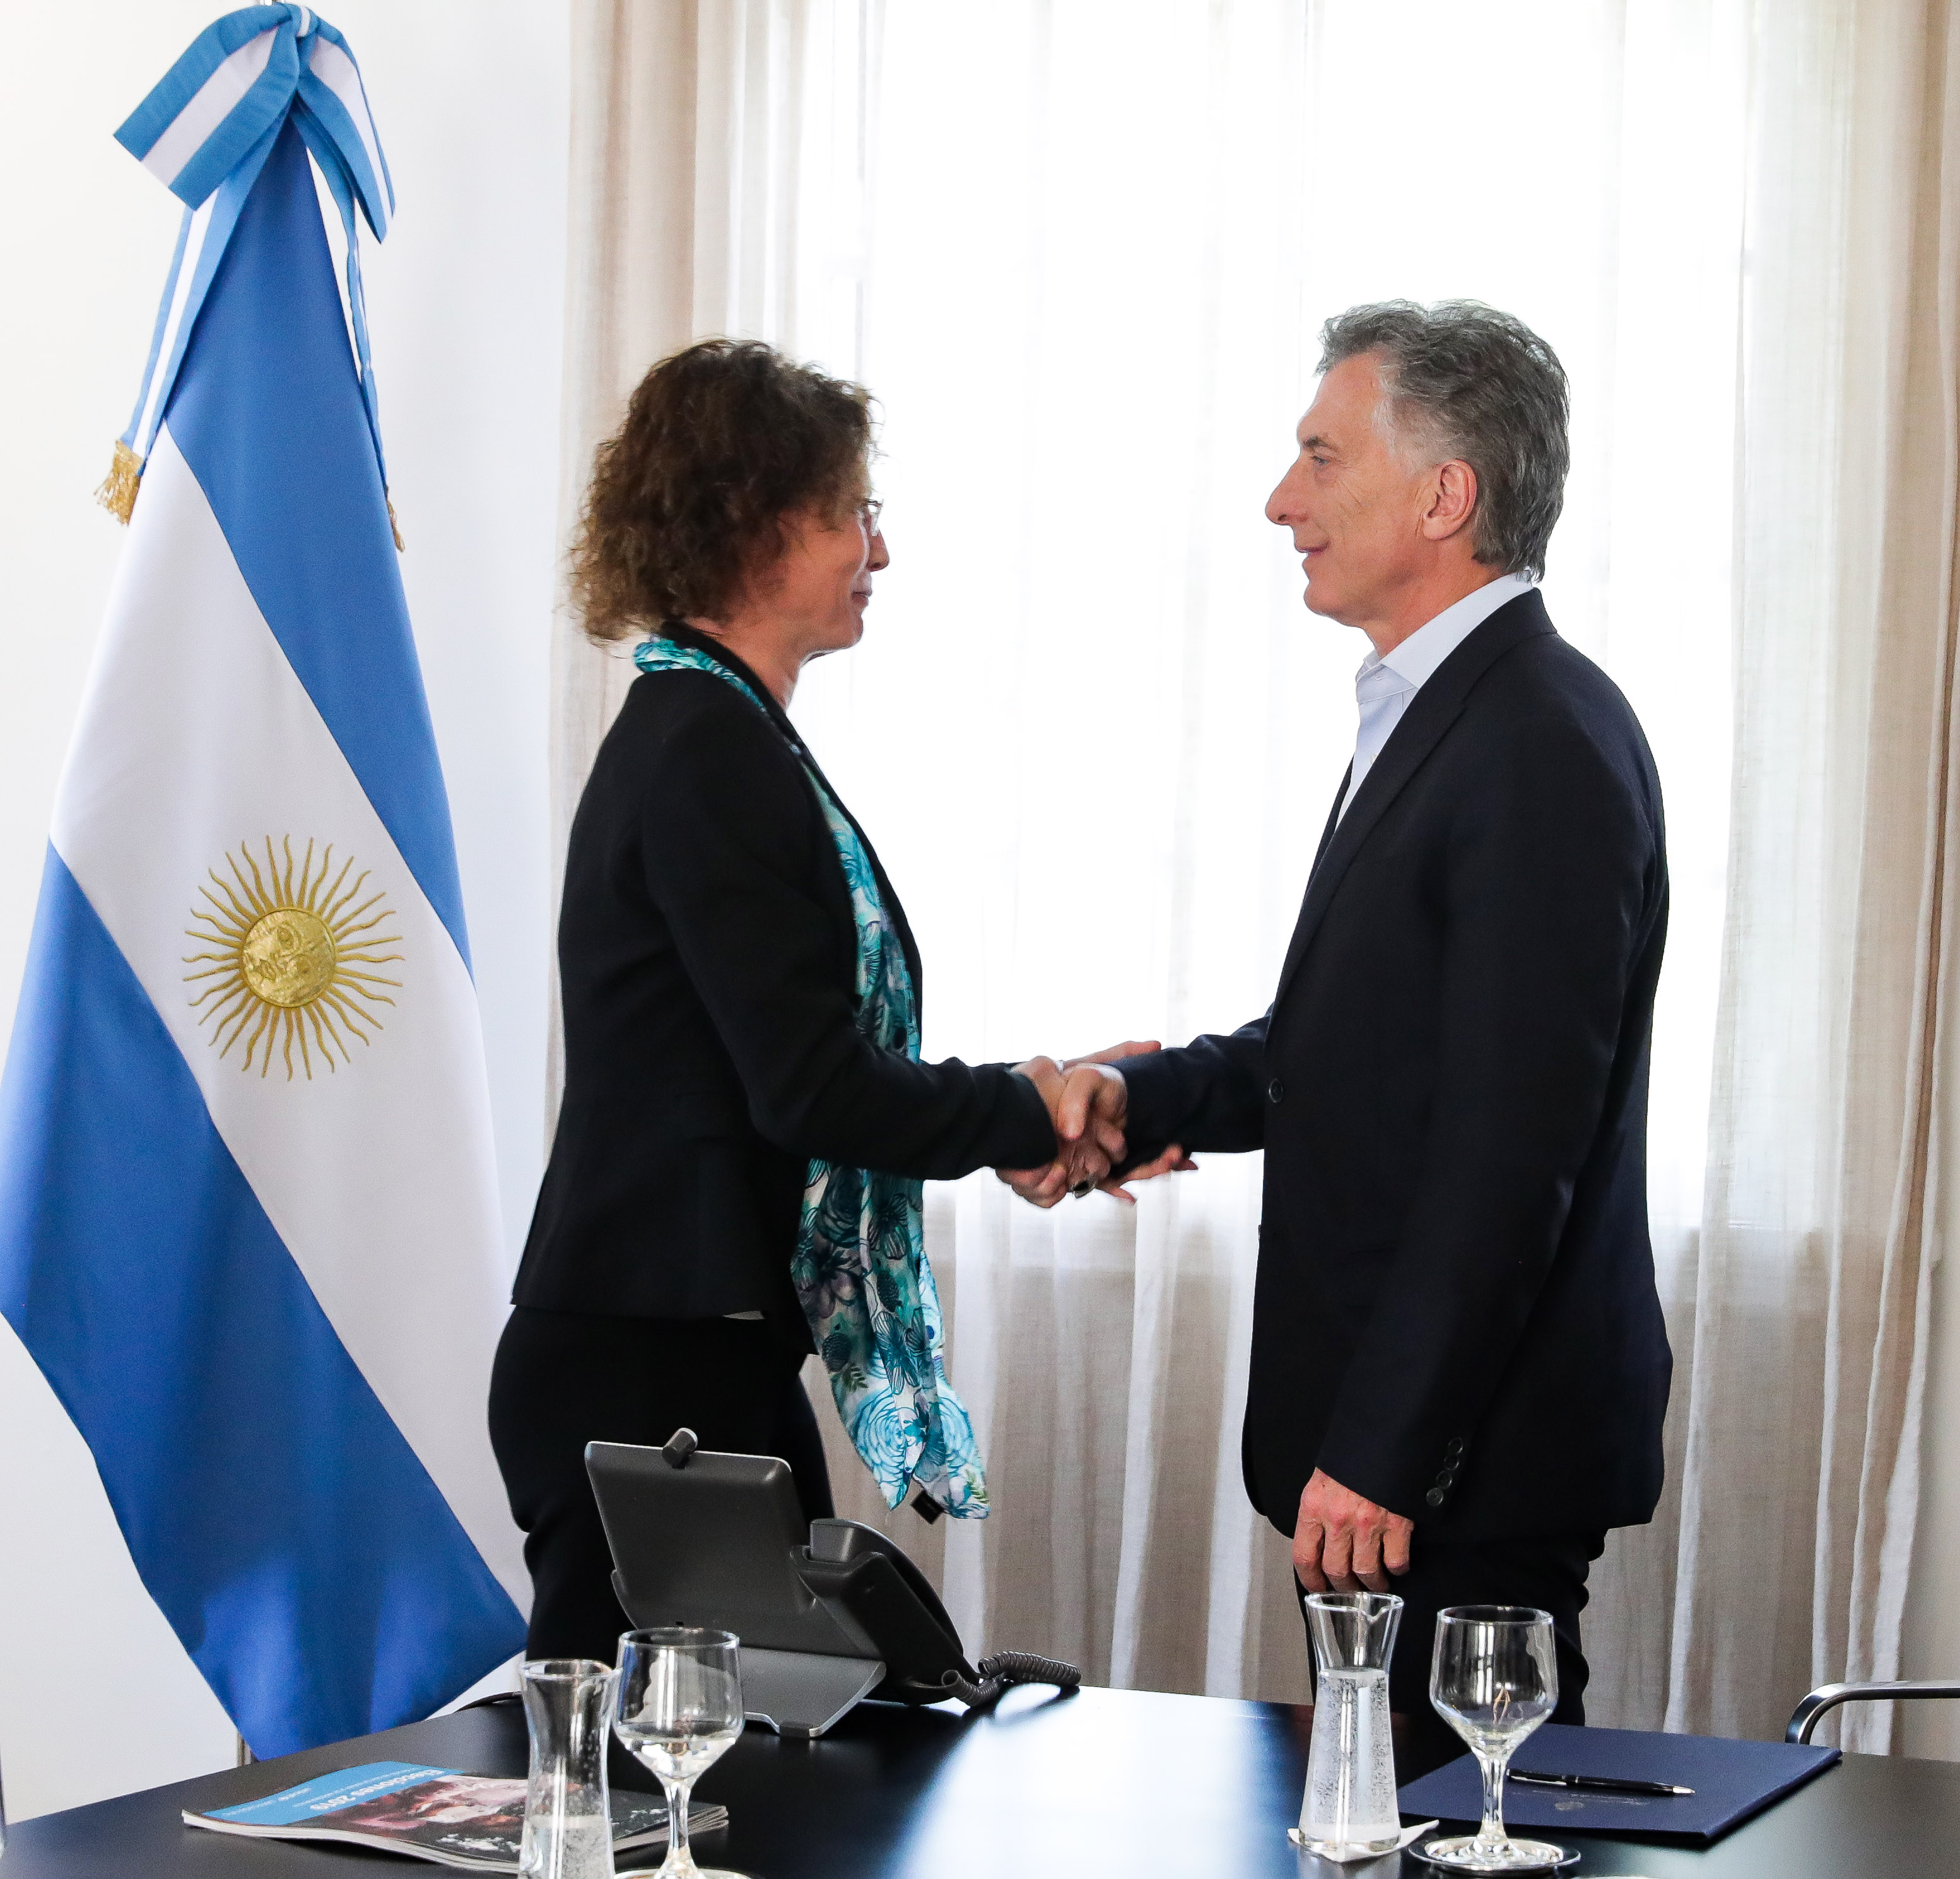 El Presidente Macri recibió a directivos de Unicef en la Argentina.